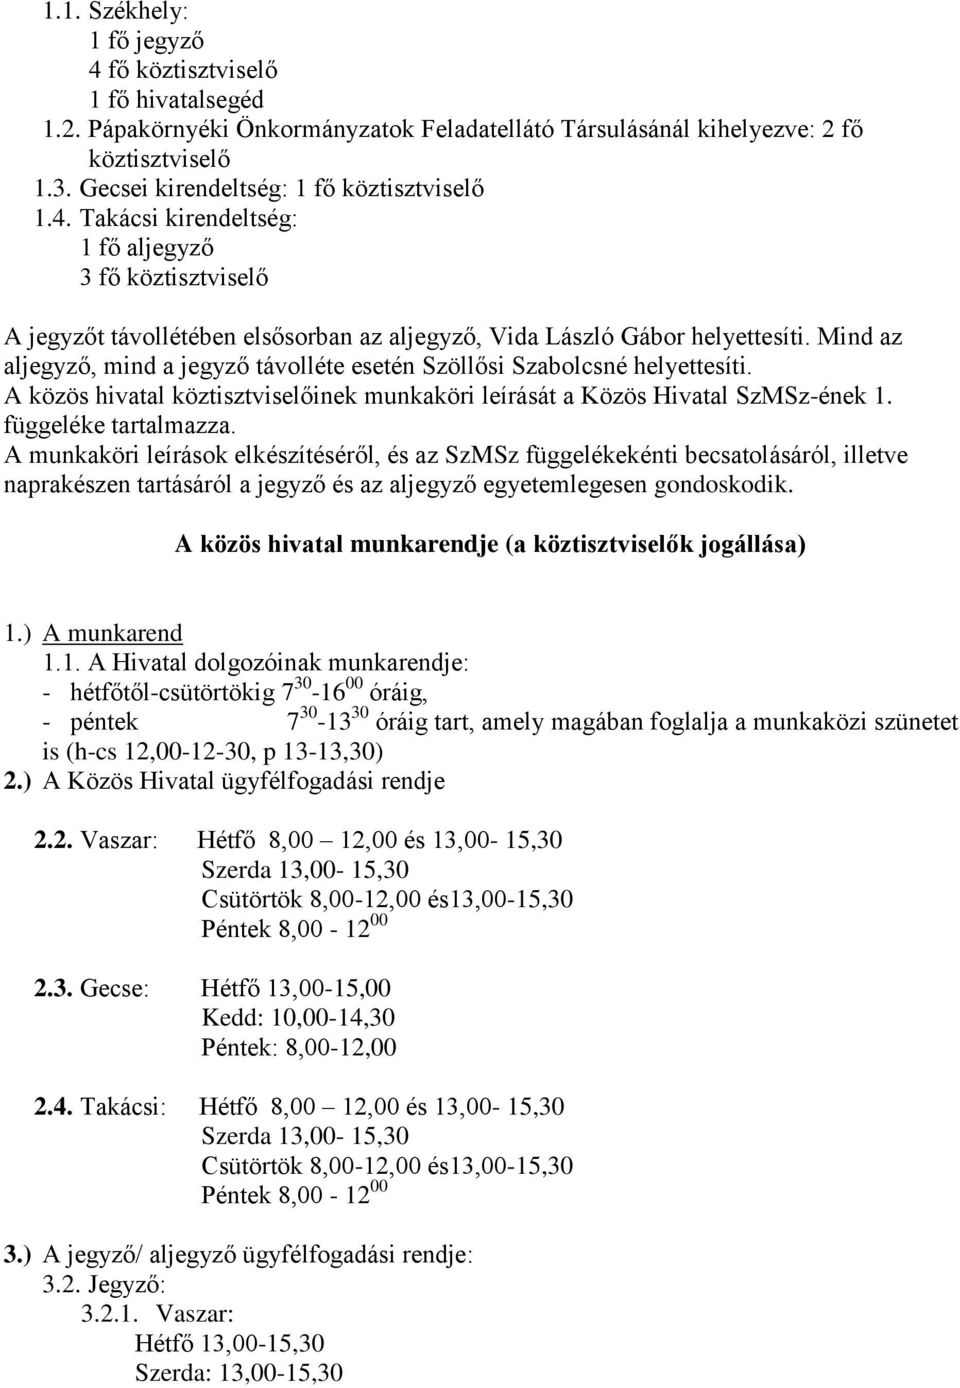 Mind az aljegyző, mind a jegyző távolléte esetén Szöllősi Szabolcsné helyettesíti. A közös hivatal köztisztviselőinek munkaköri leírását a Közös Hivatal SzMSz-ének 1. függeléke tartalmazza.